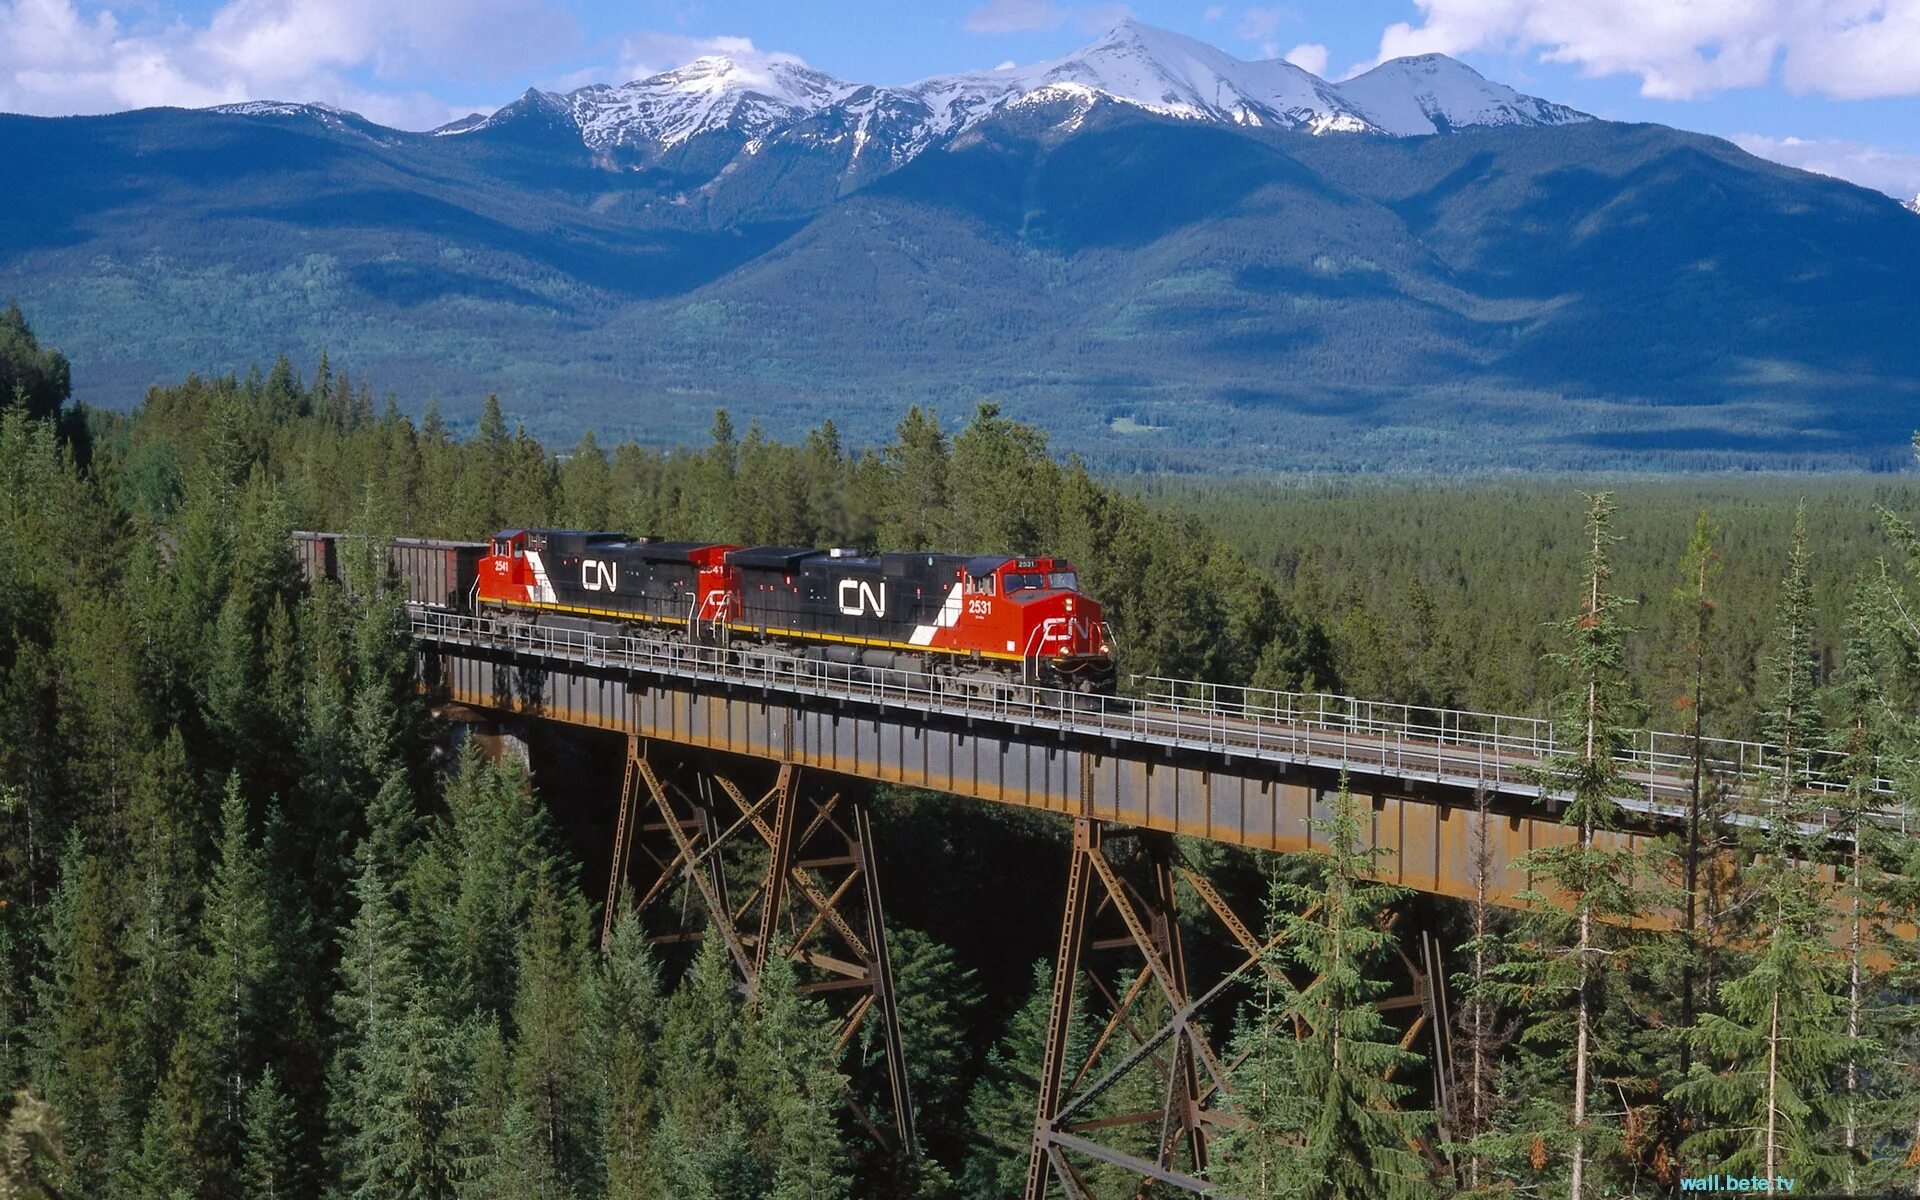 Железная дорога там. Монтана штат железная дорога. Кольцевая железная дорога Джорджтауна. Канадская Тихоокеанская железная дорога. Поезд в тайге.